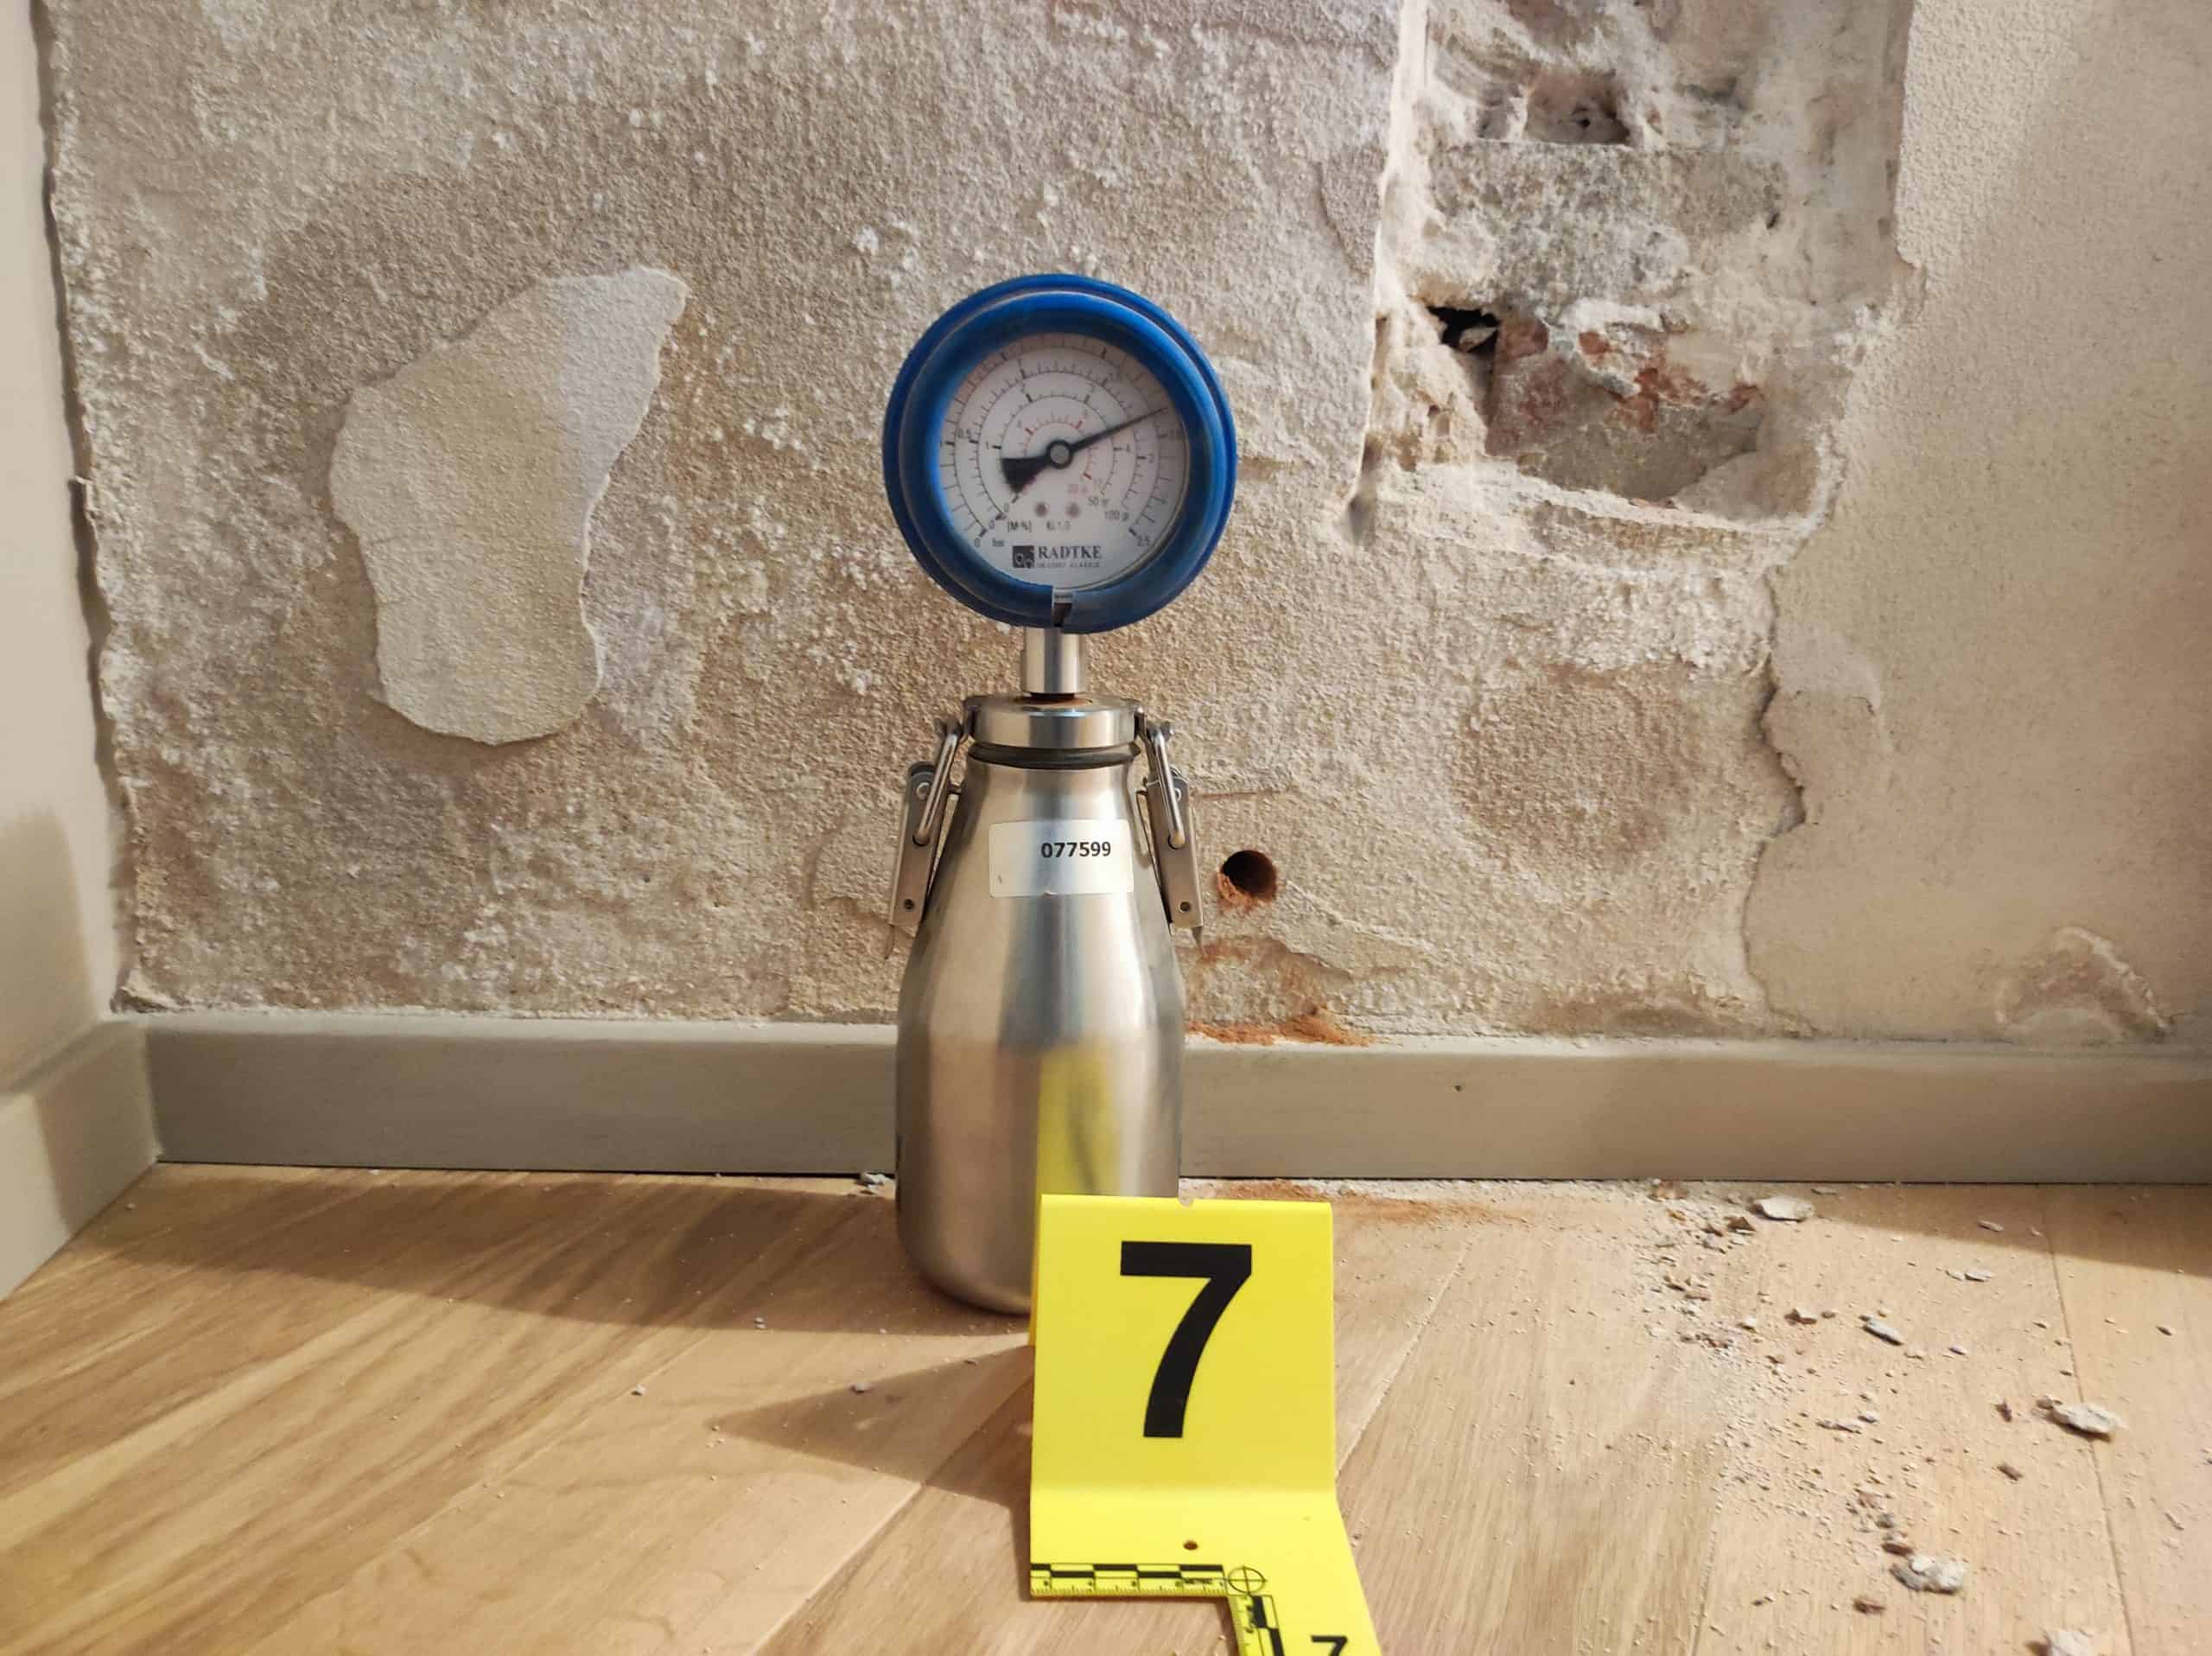 Igrometro: ecco come misurare l'umidità in casa! 